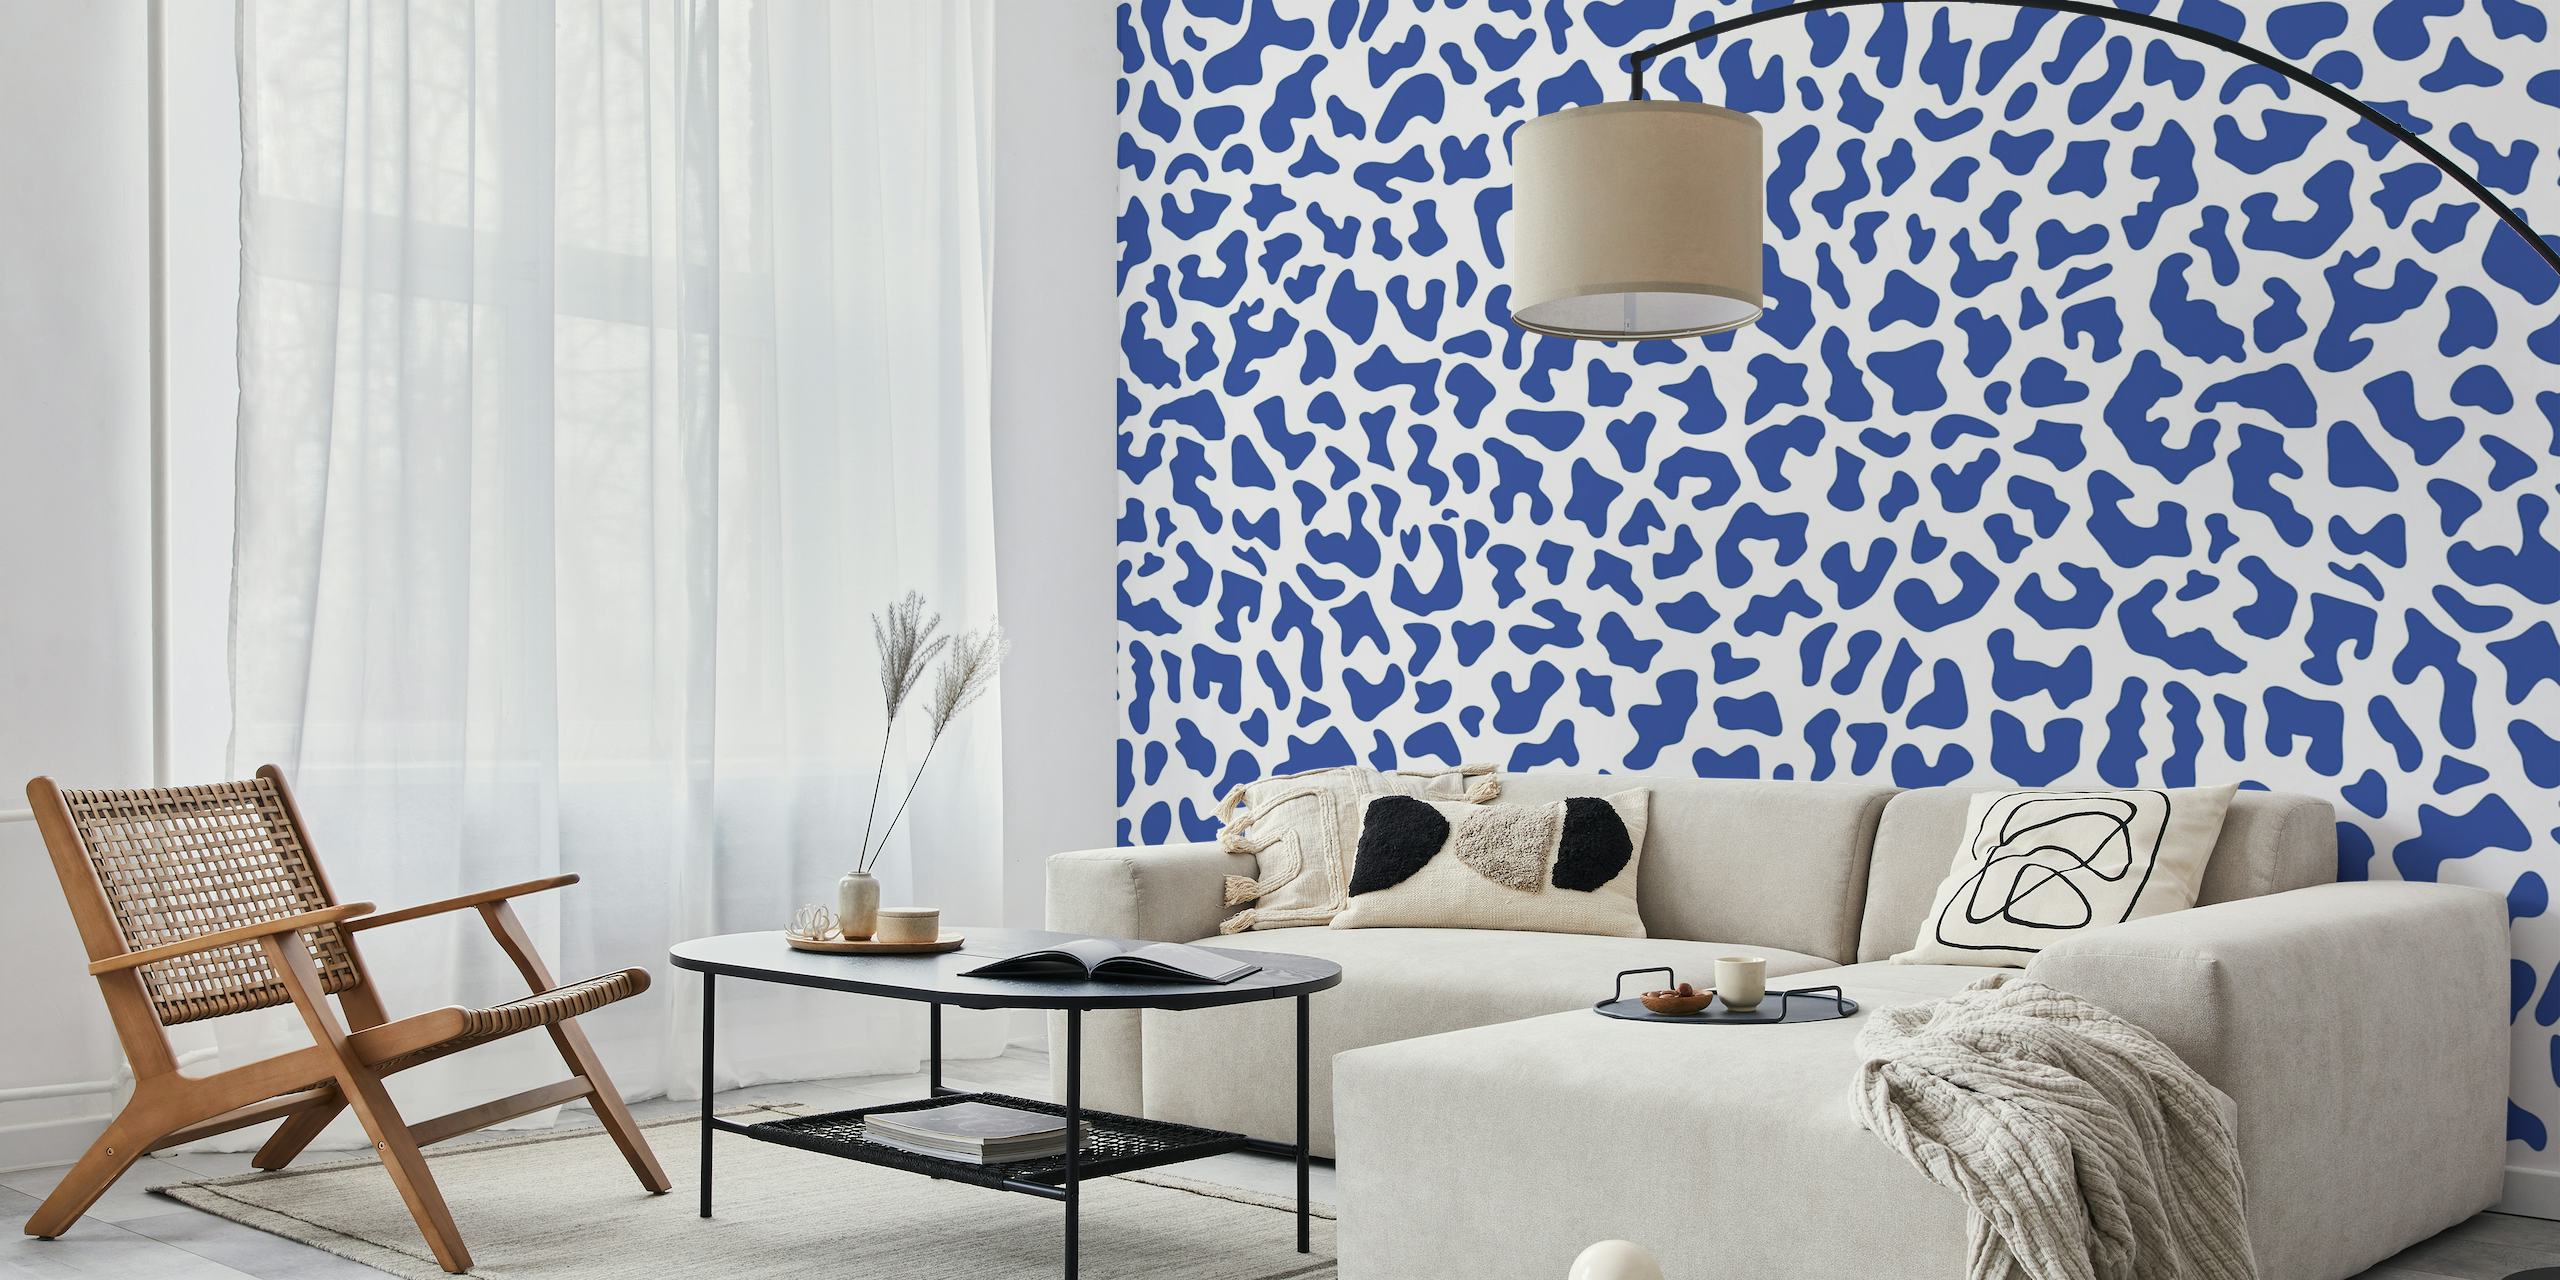 Plavo-bijeli dizajn zidnog murala s printom leoparda